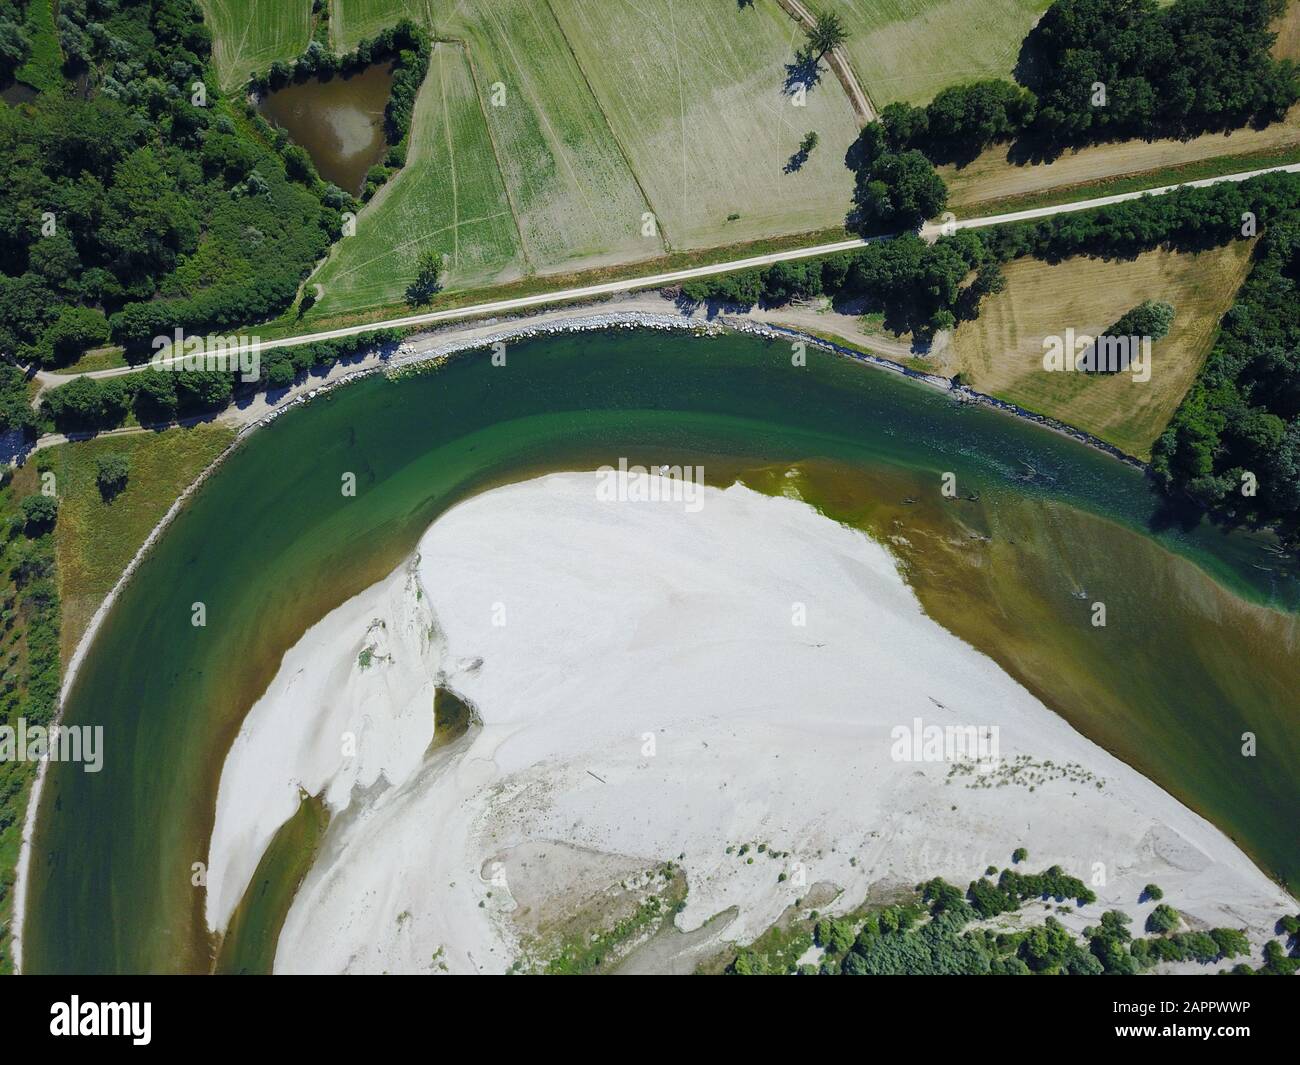 Aerial view, Ticino river Nature Park, Parco Naturale della Valle del Ticino, Bereguardo, Lombardy, Italy, Europe Stock Photo